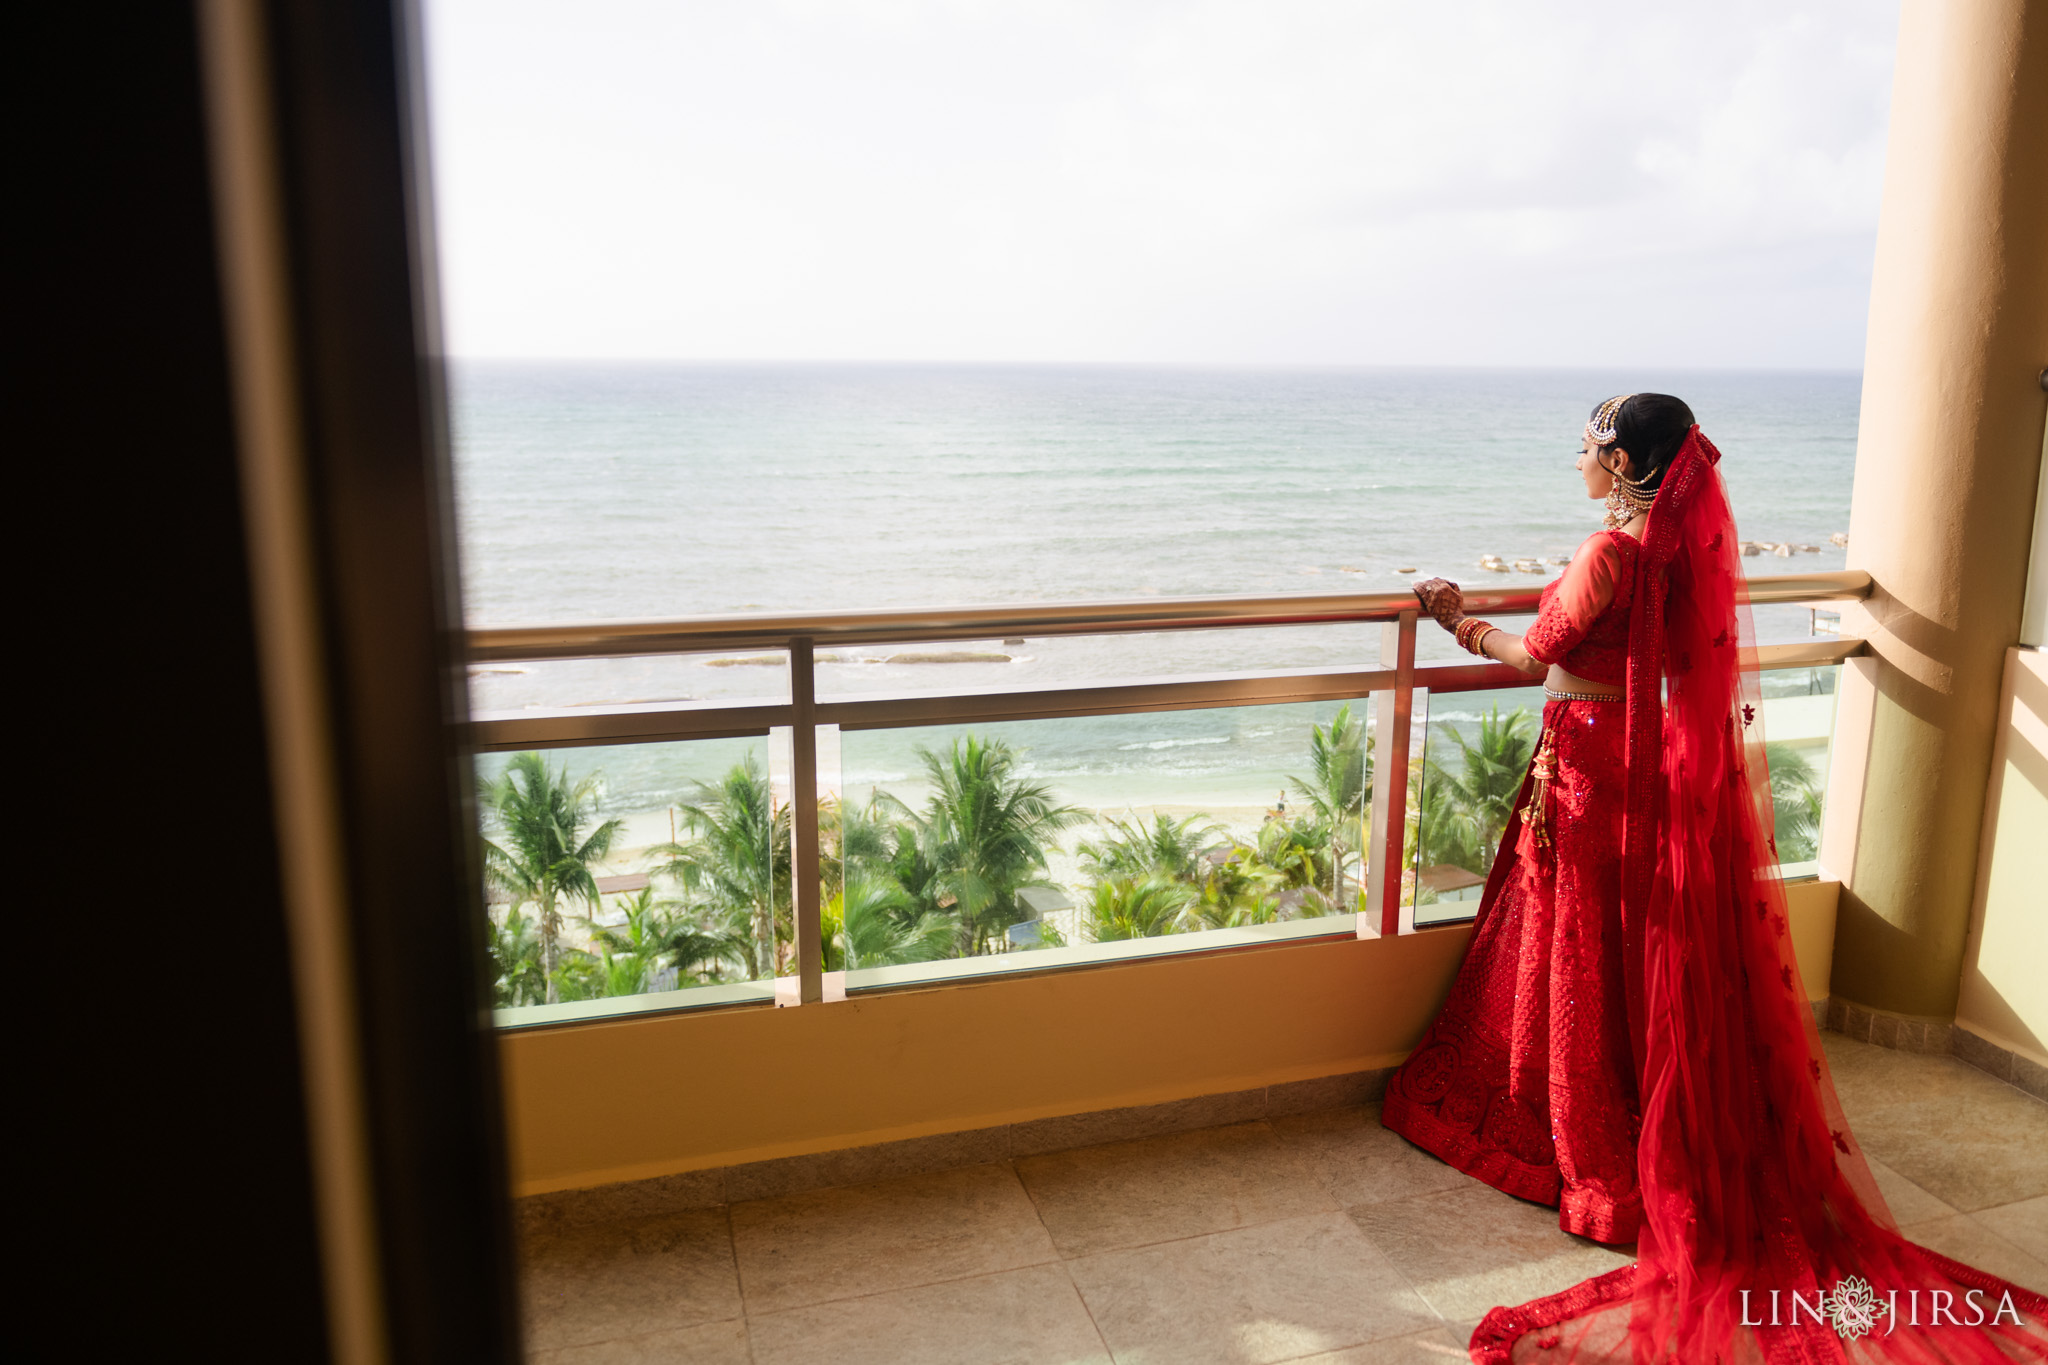 06 Generations El Dorado Royale Cancun Mexico Indian Bride Wedding Photography